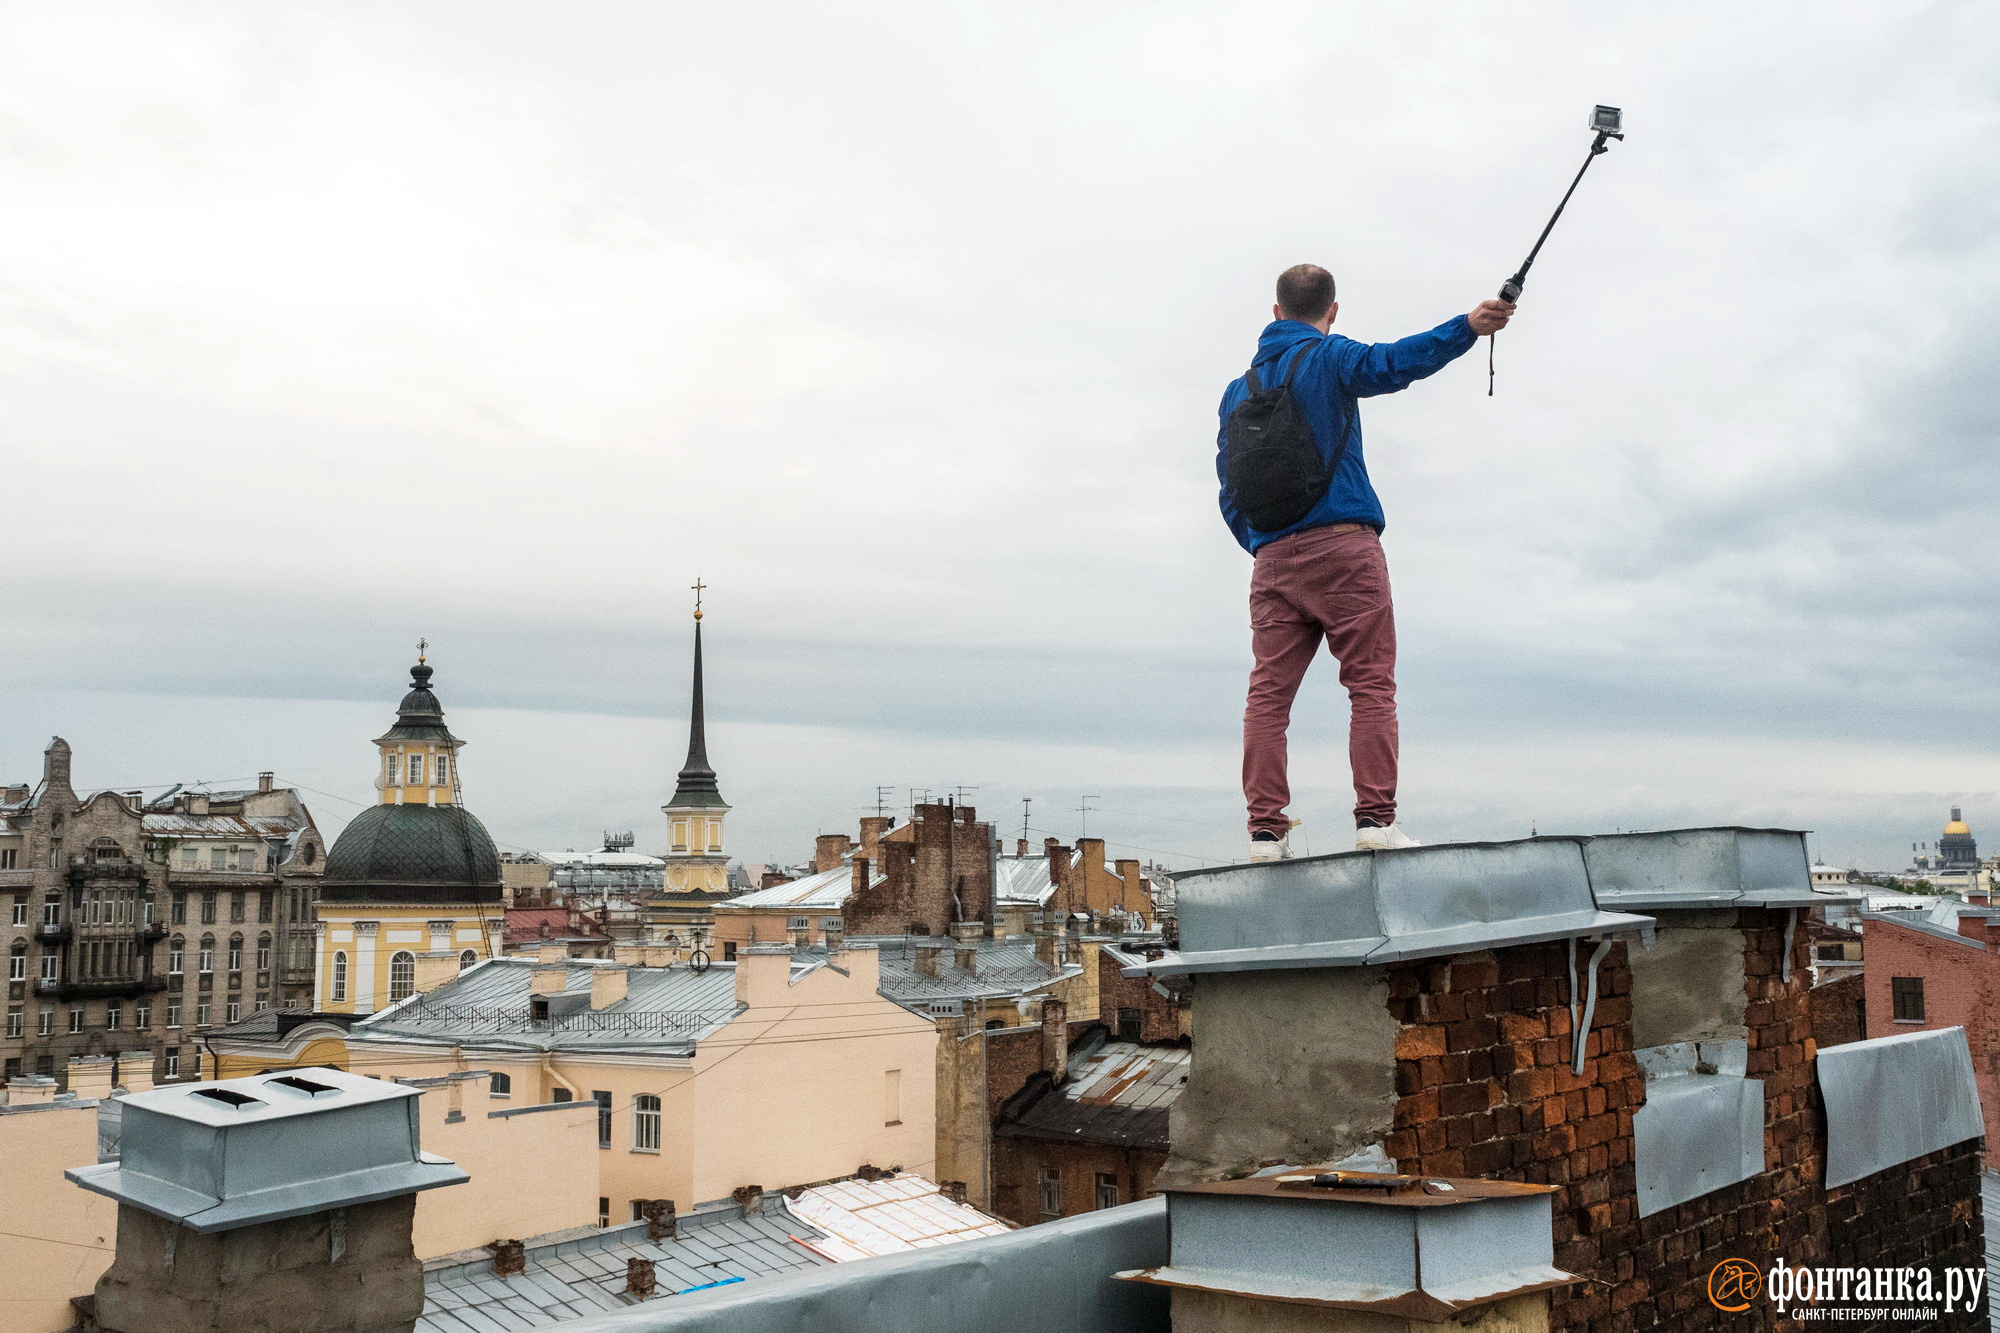 «Власти за нас этот вопрос не решат». Петербуржцы разработали инструкцию по борьбе с экскурсоводами-нелегалами на крышах